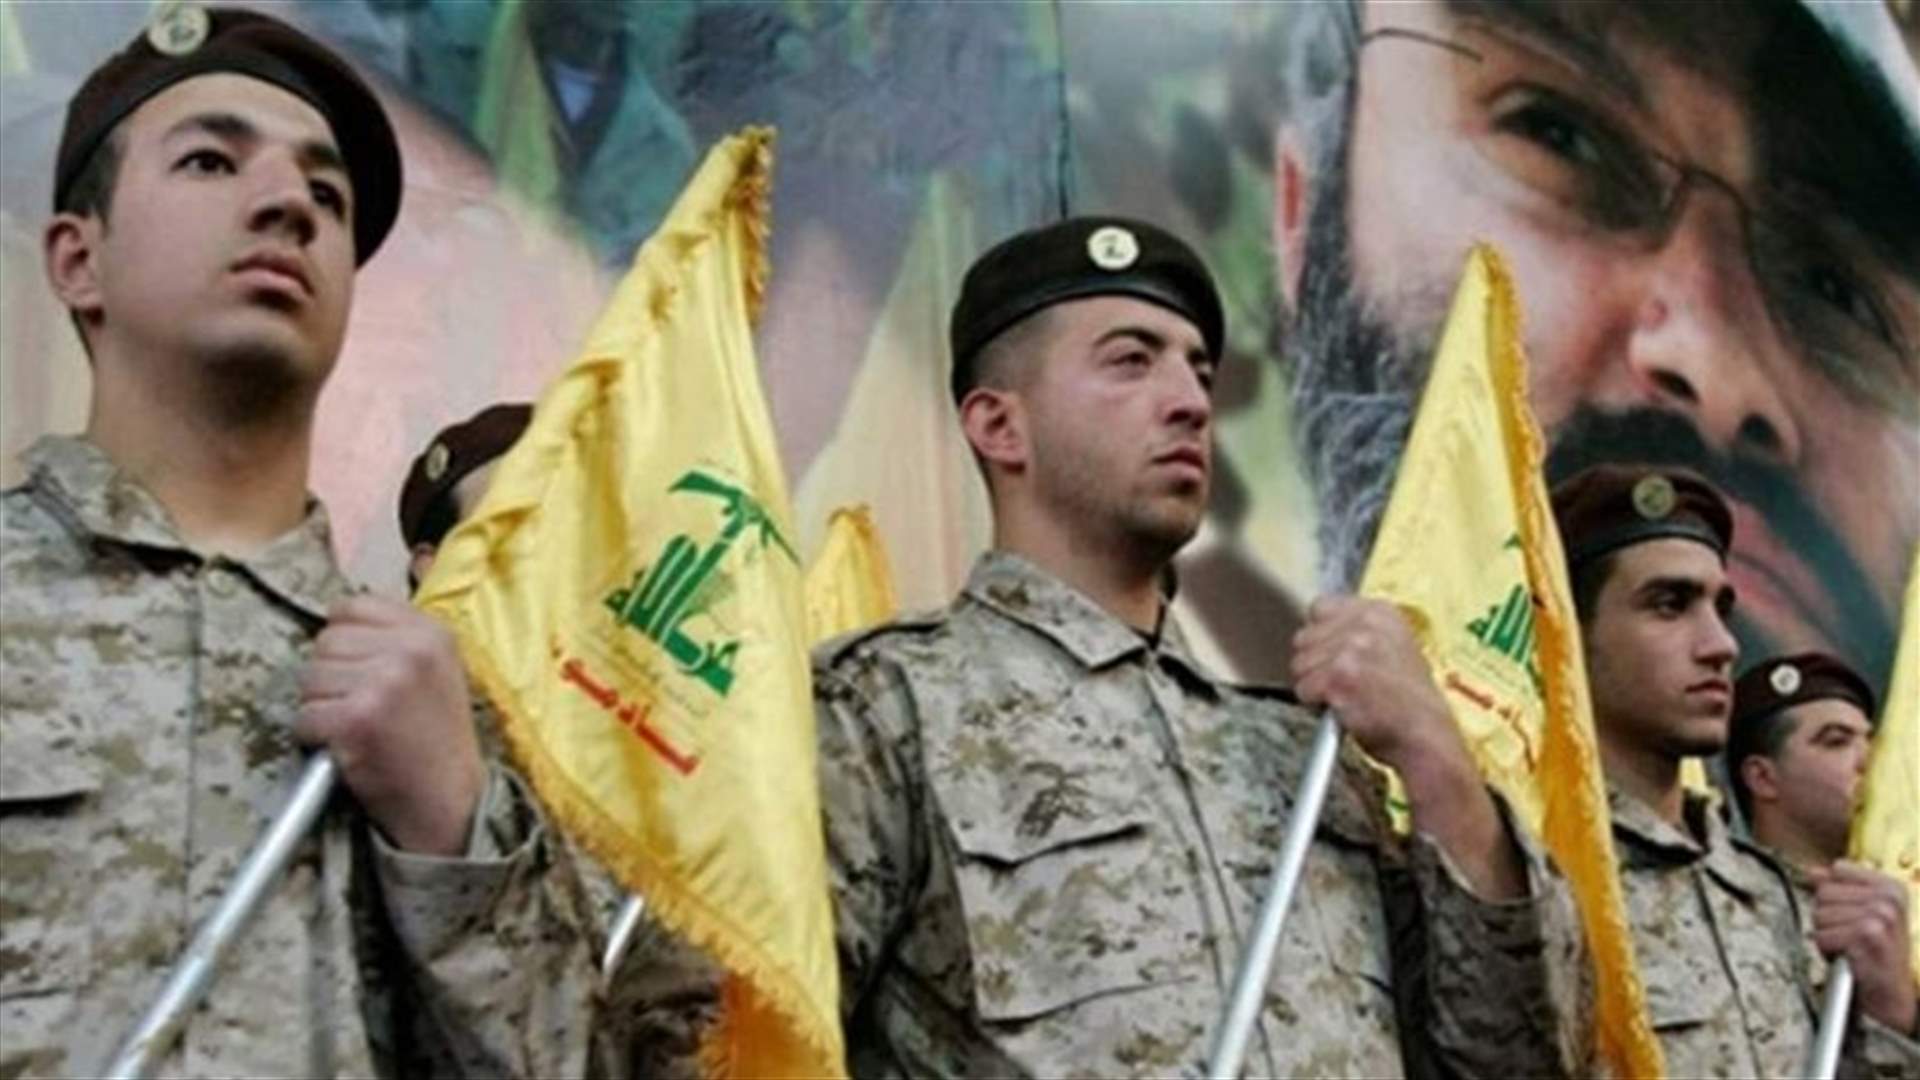 كيف علقت مصادر دبلوماسية غربية على نيّة ألمانيا حظر حزب الله على أراضيها؟ (الأخبار)